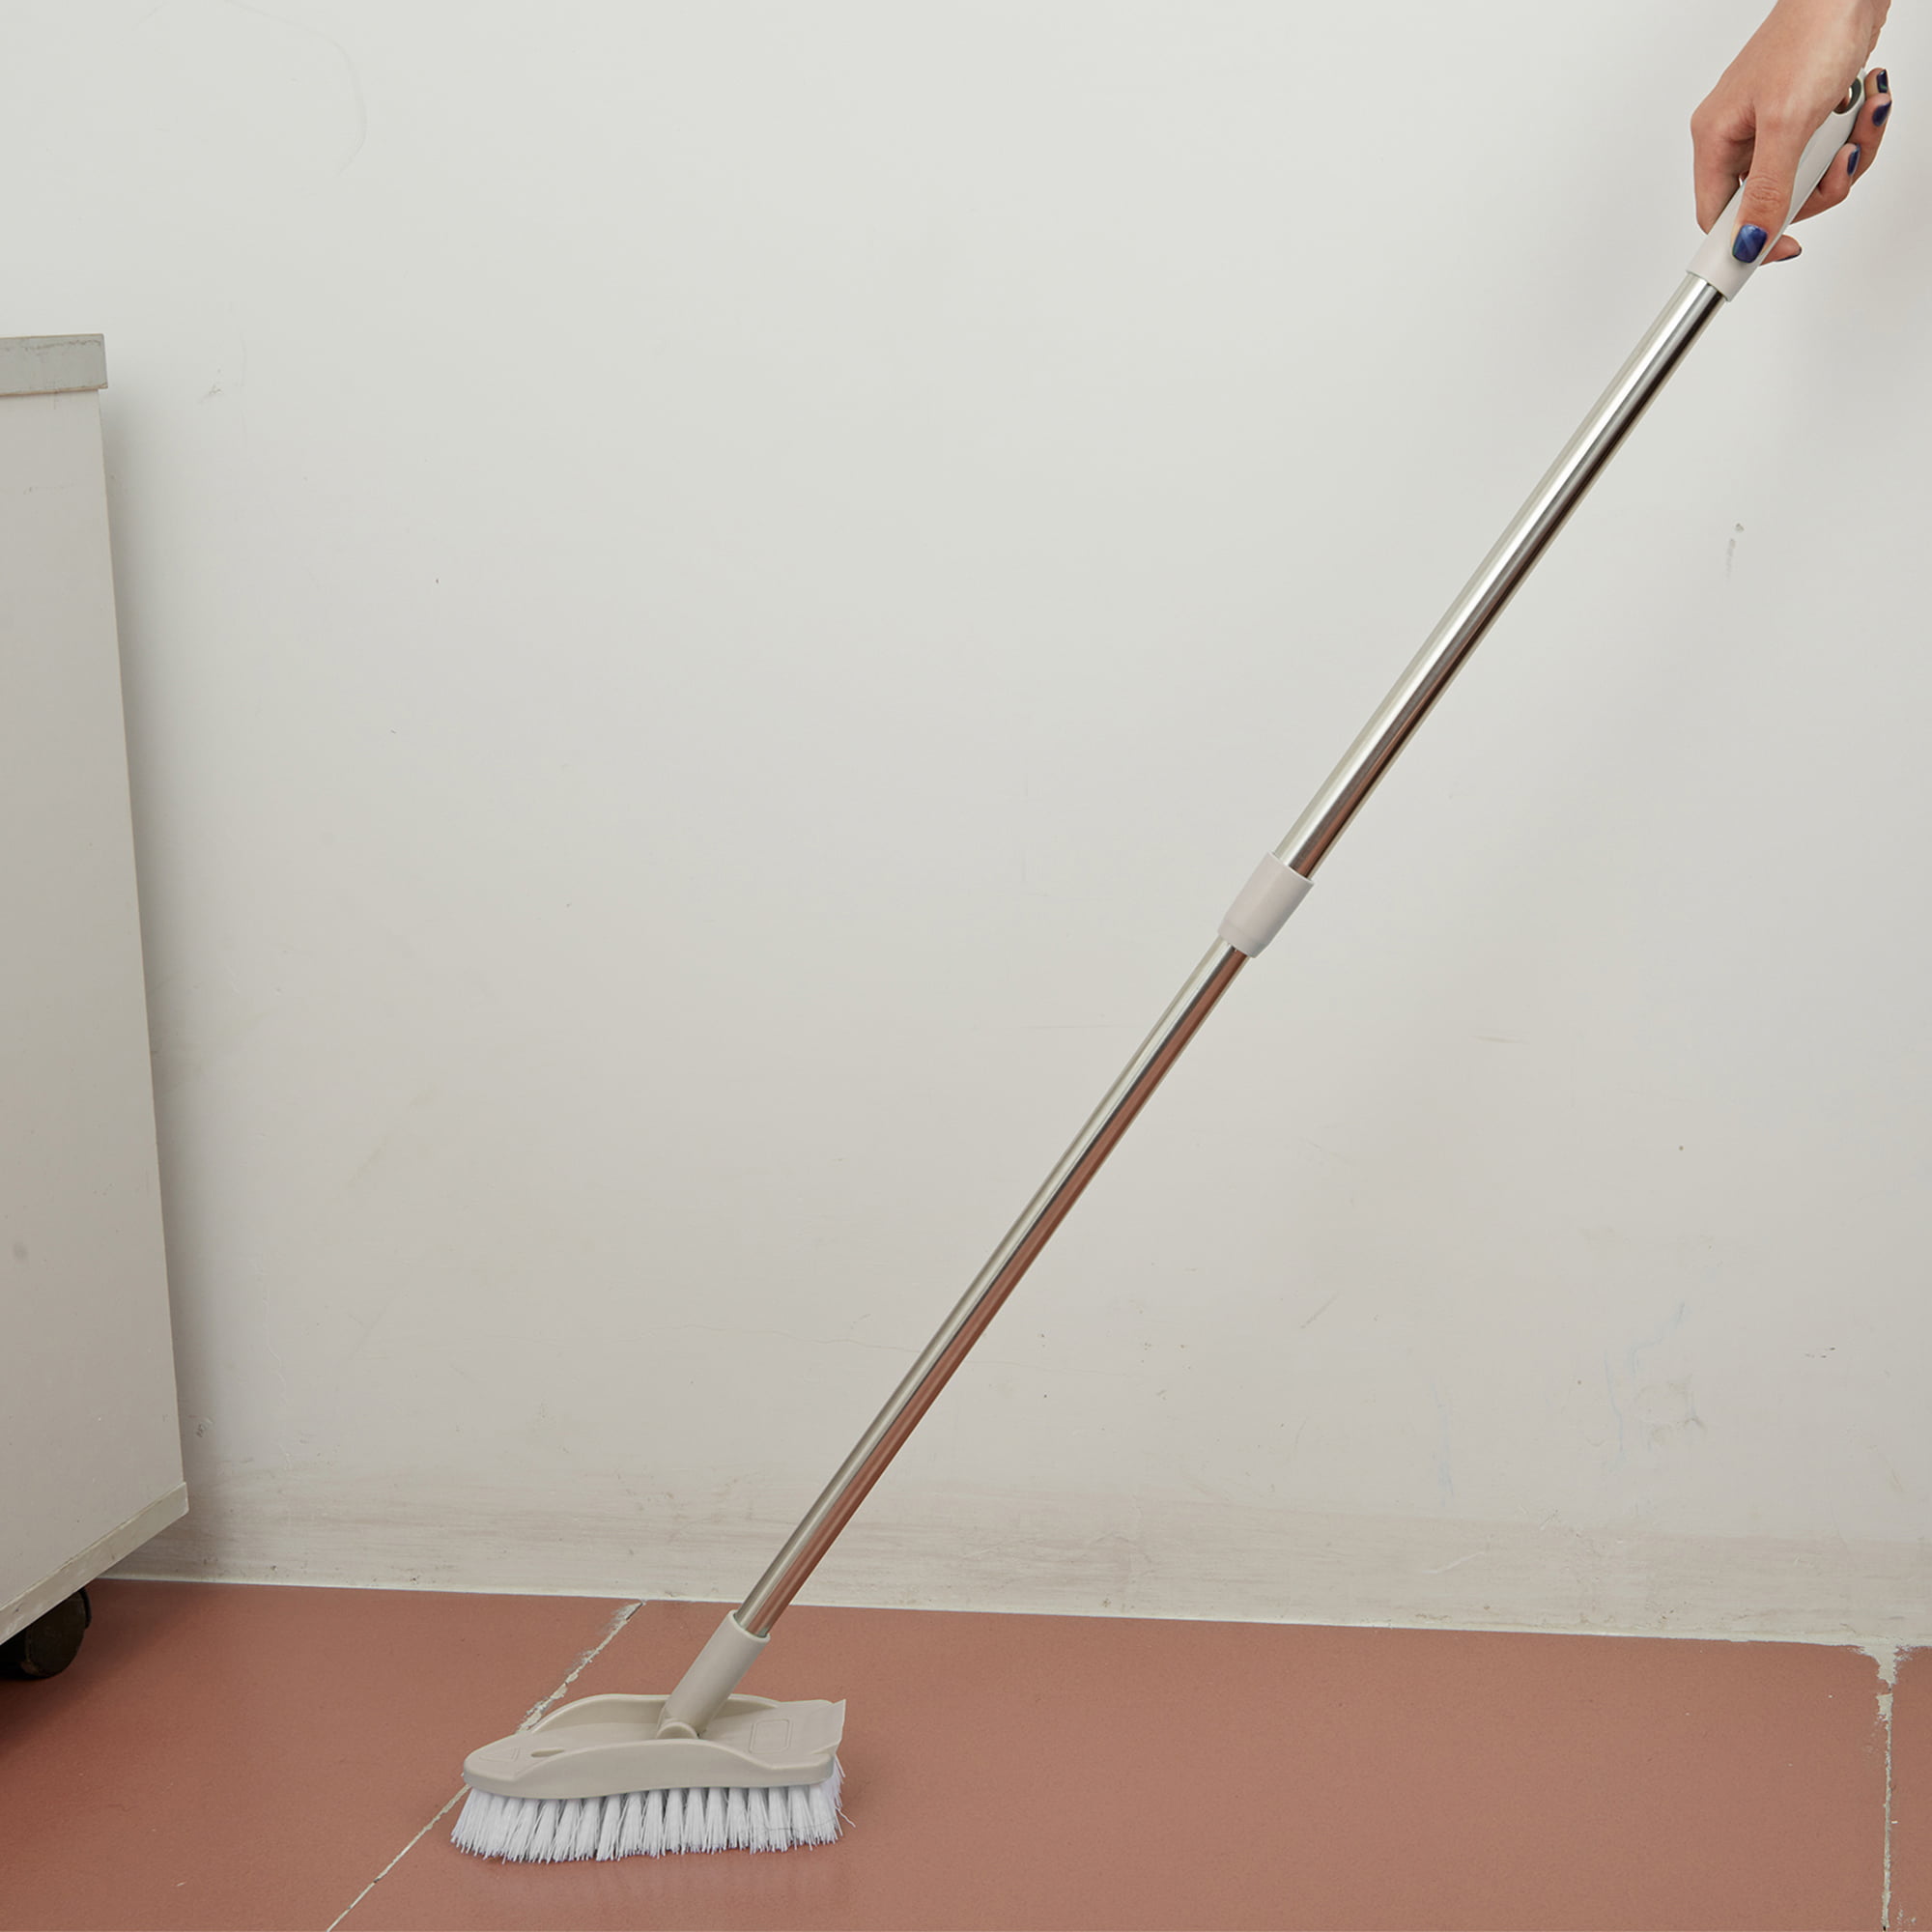 2 In 1 Floor Cleaning Brush Bathroom Tile Windows Floor Cleaning Brush –  HooknStuff